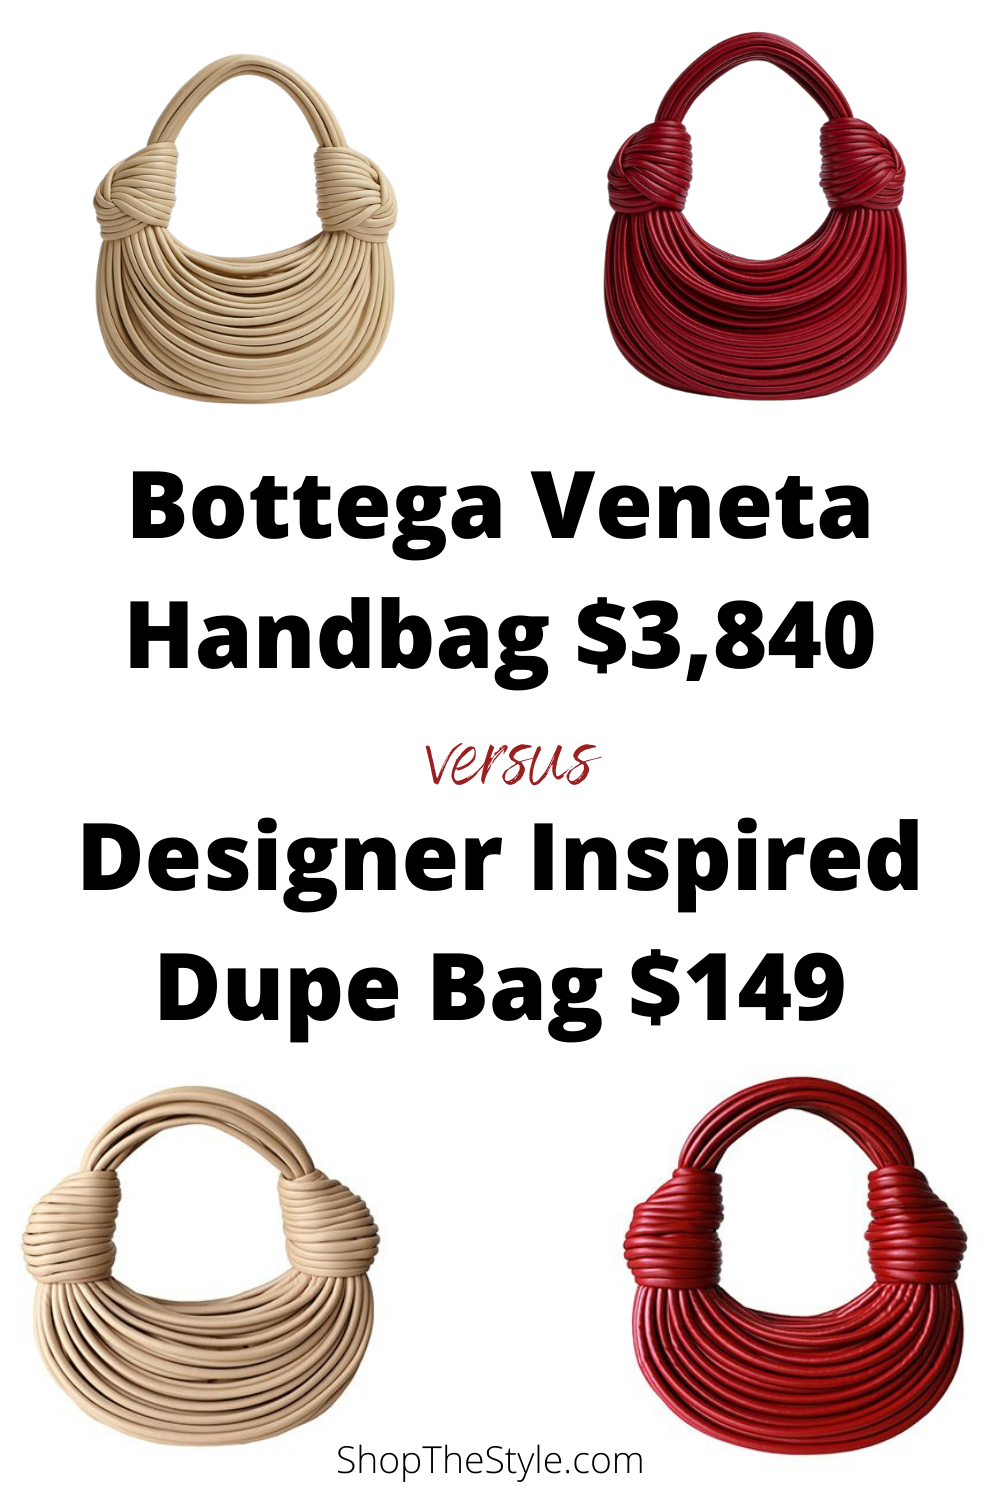 Knock-off Bottega Veneta Handbags